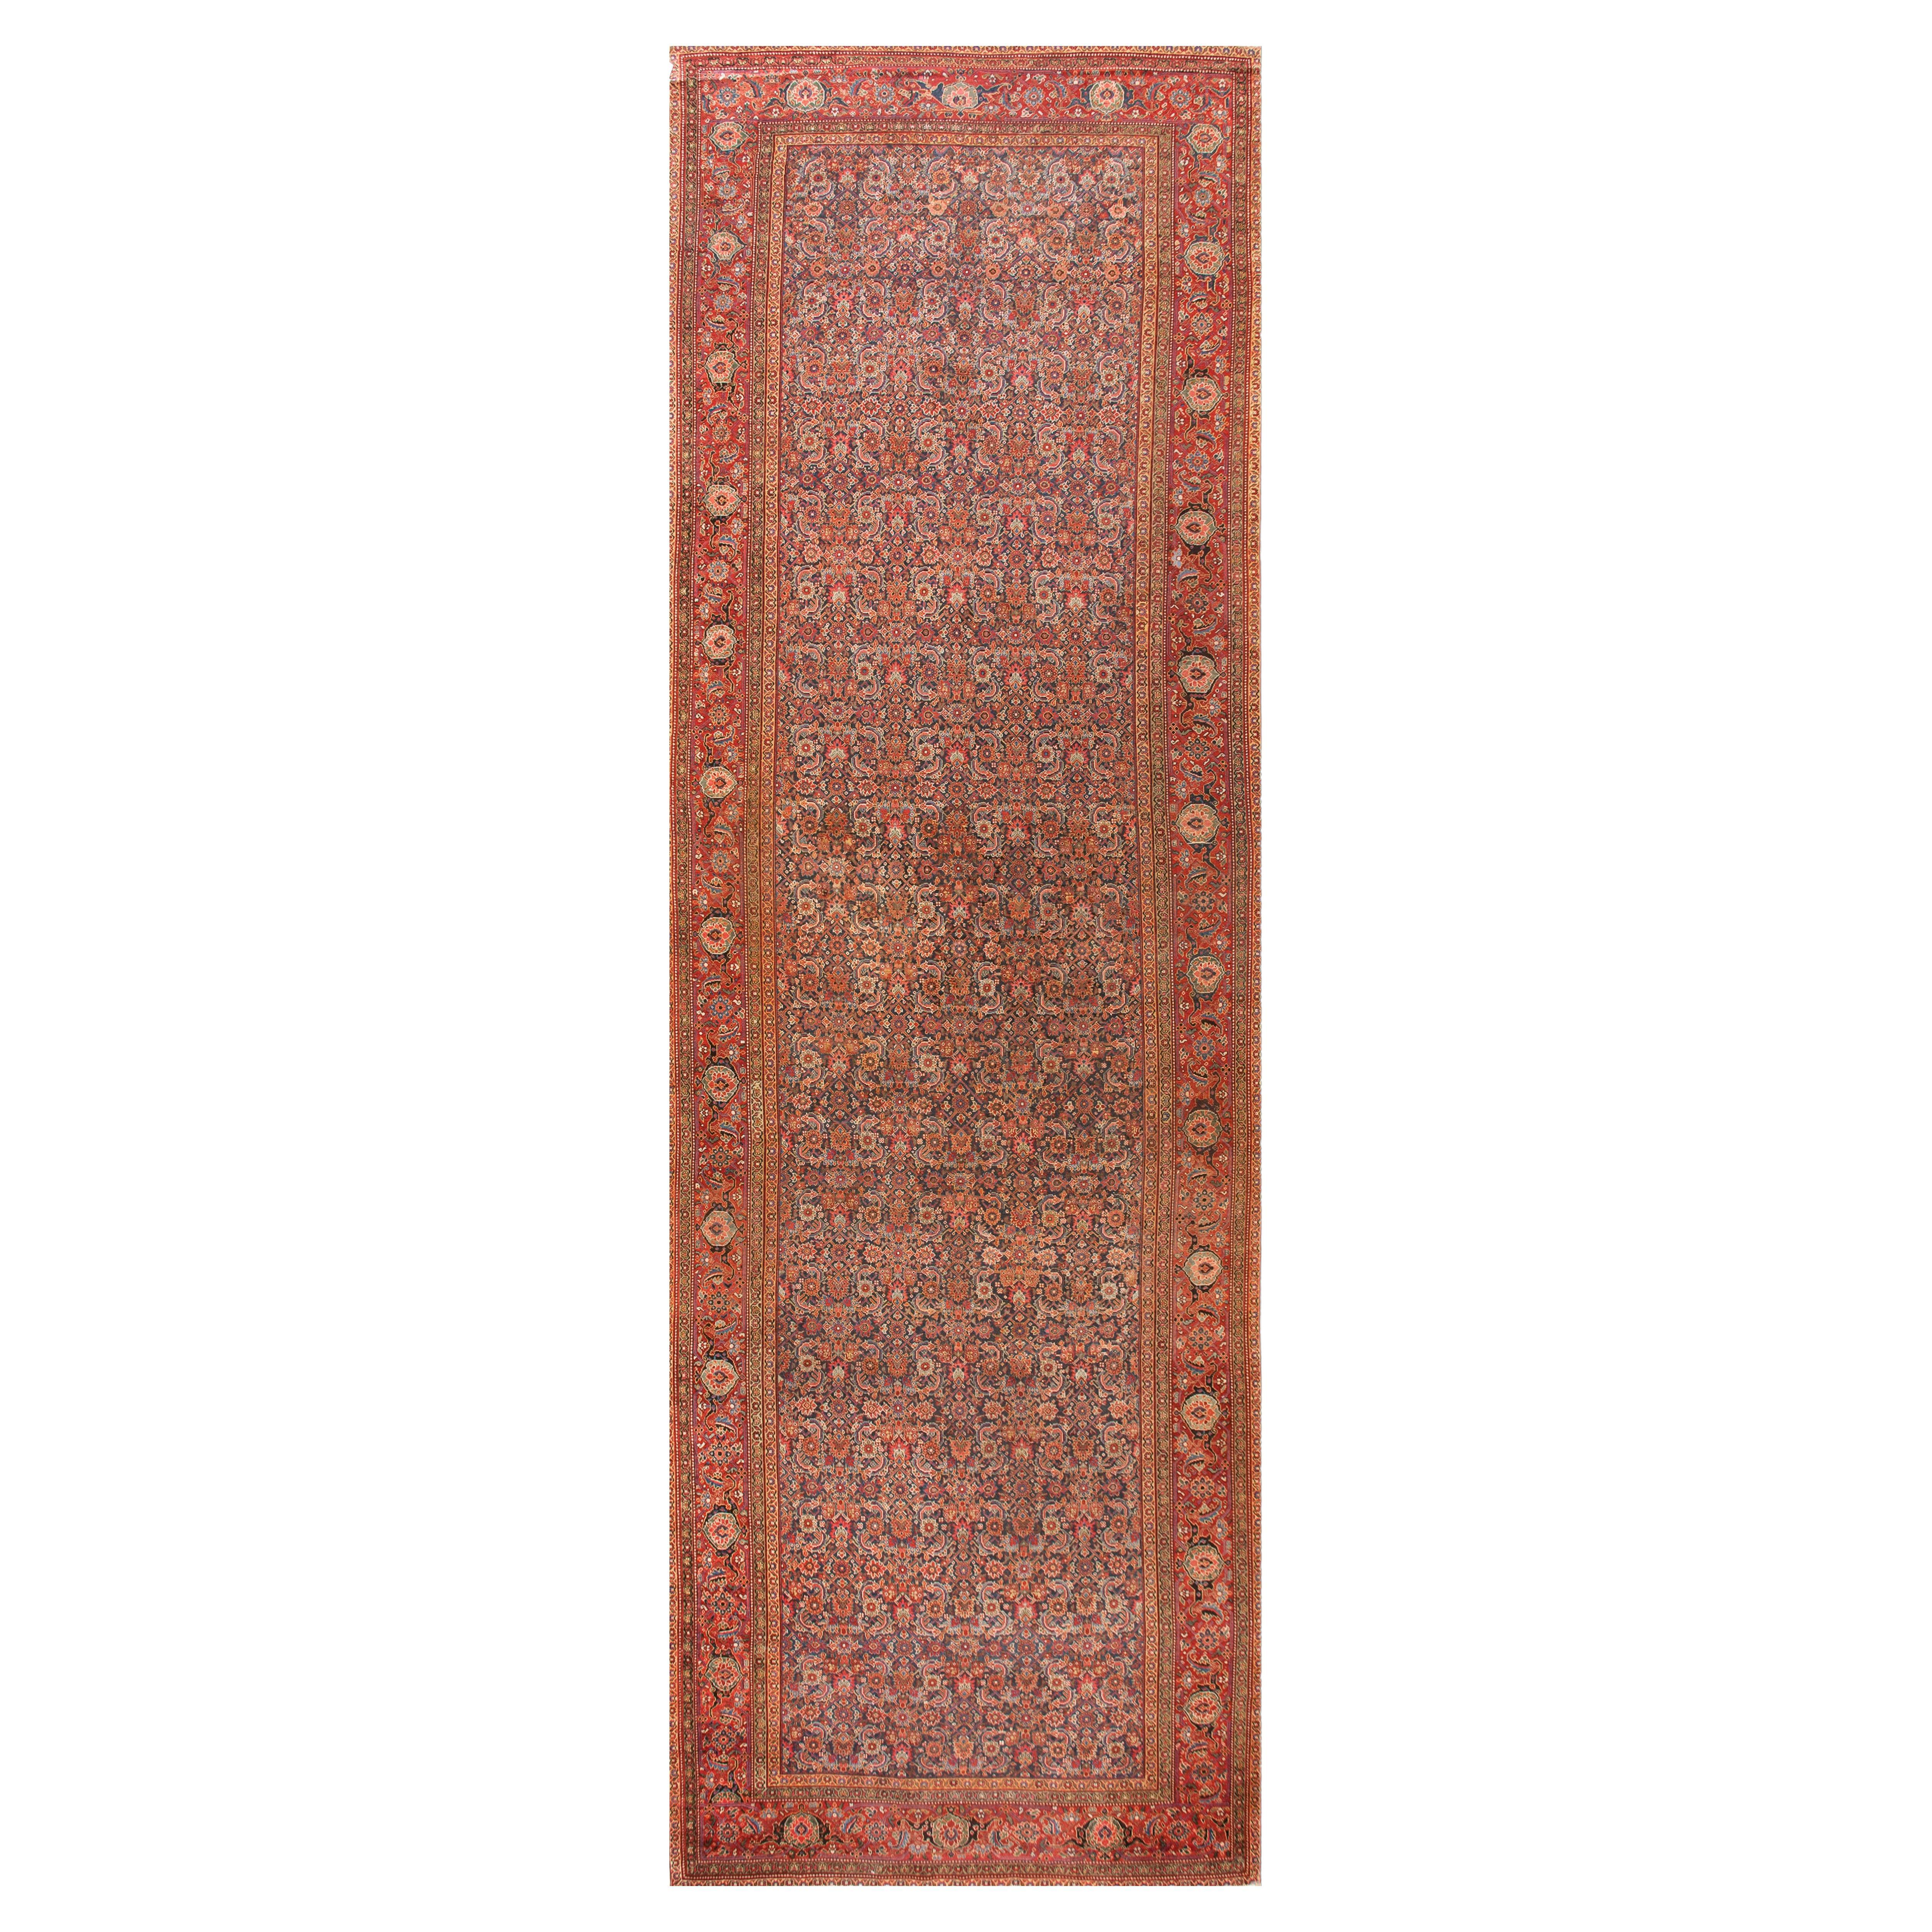 Mitte des 19. Jahrhunderts NW Persischer Galeerenteppich ( 7'8" x 22'10" - 234 x 696 )